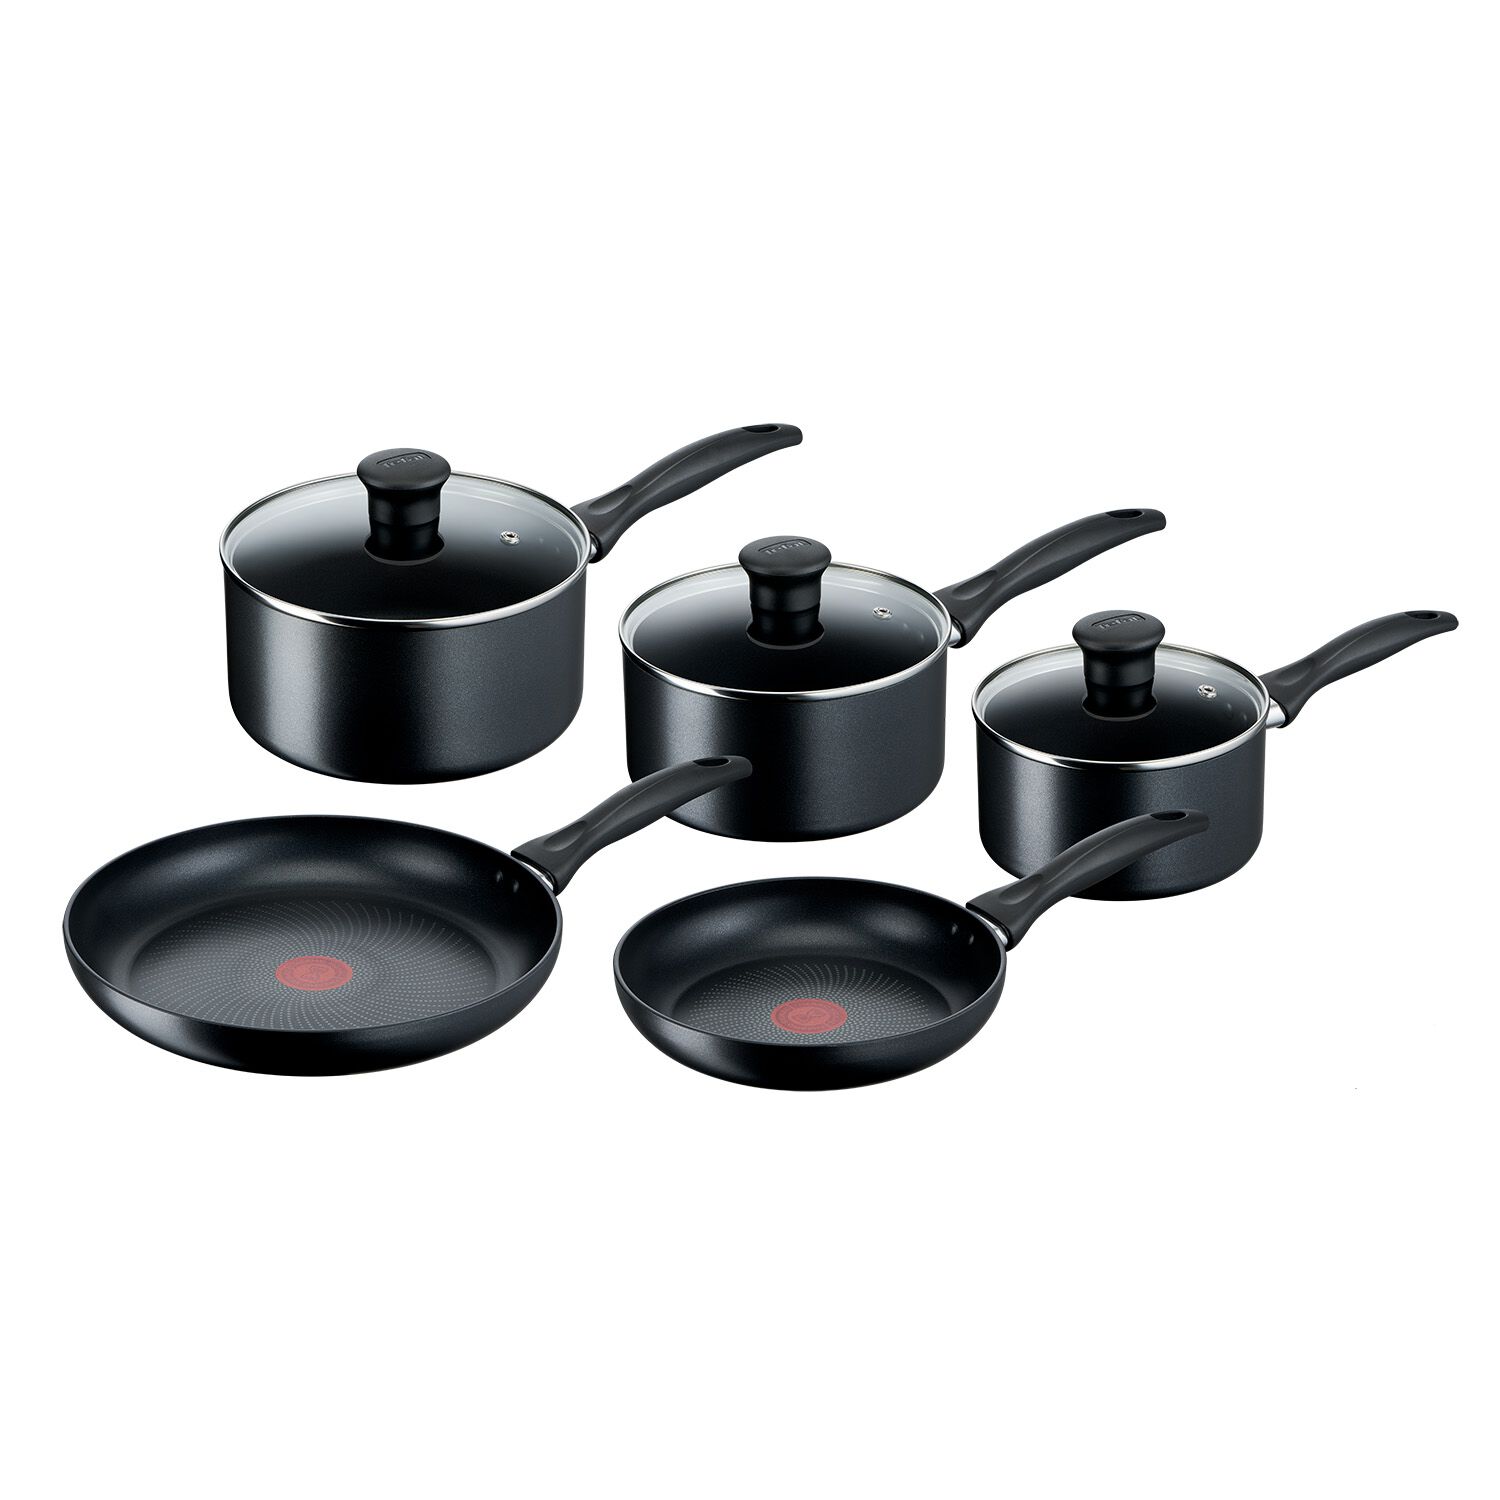 Tefal Induction Black 5 Piece Cookware Set